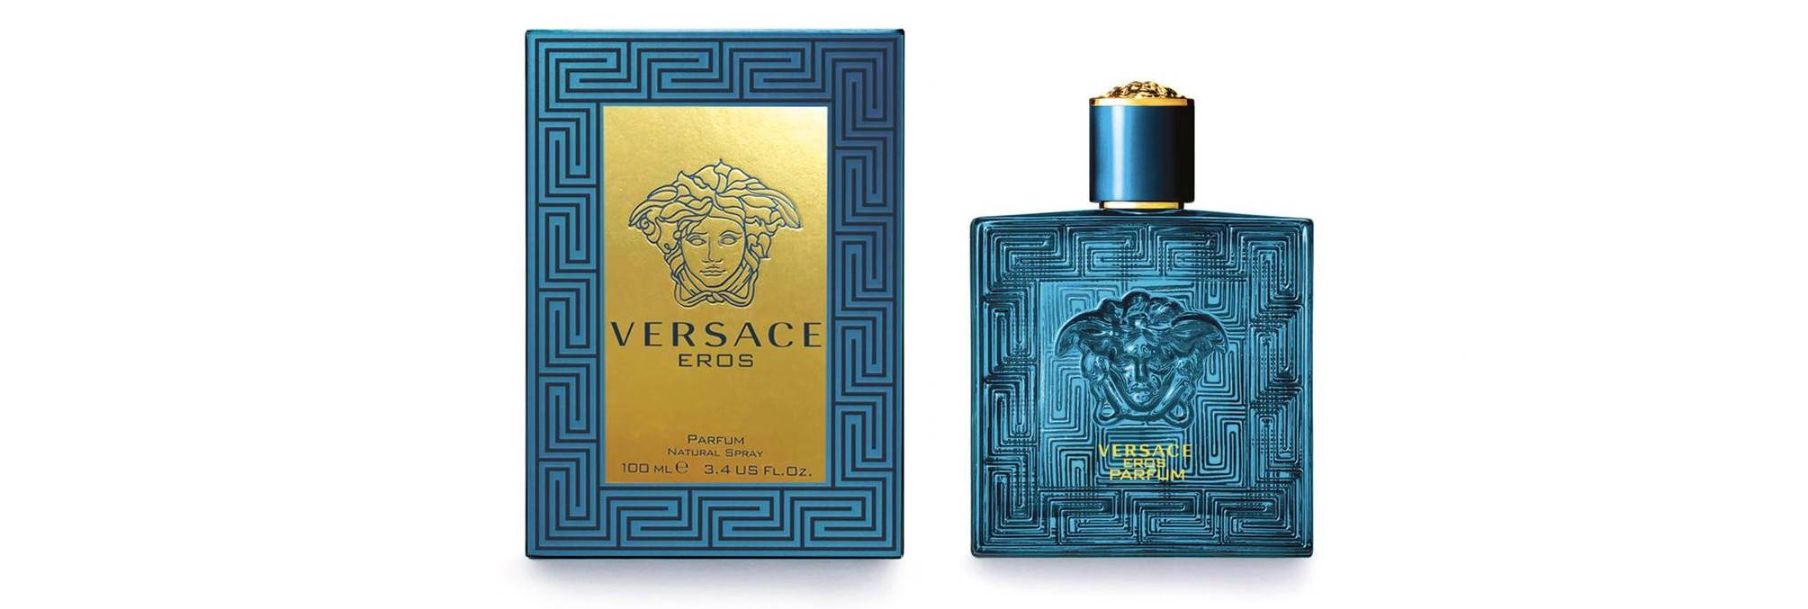 Versace Eros Parfum nước hoa Versace Eros Parfum AH Perfumes nước hoa AH Perfumes 4 Versace Eros Parfum   Sức lôi cuốn đến từ vị thần tình yêu Hy Lạp